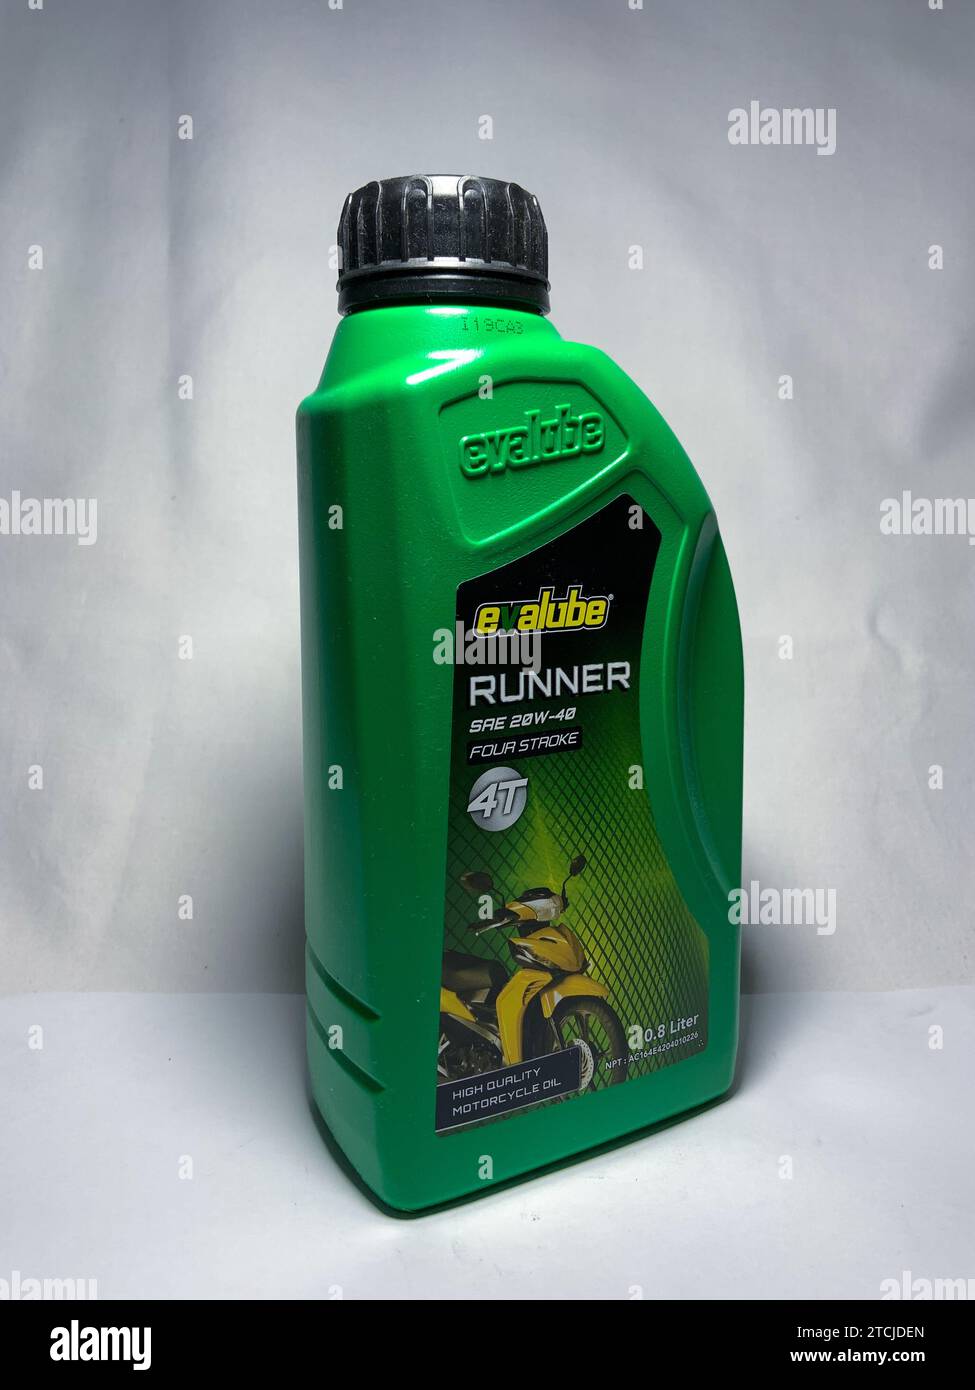 Surakarta, Indonesia - November 20, 2023 : Evalube Runner motor oil, high quality motorcycle oil four stroke 4T 800ml. Evalube green bottle packaging. Stock Photo